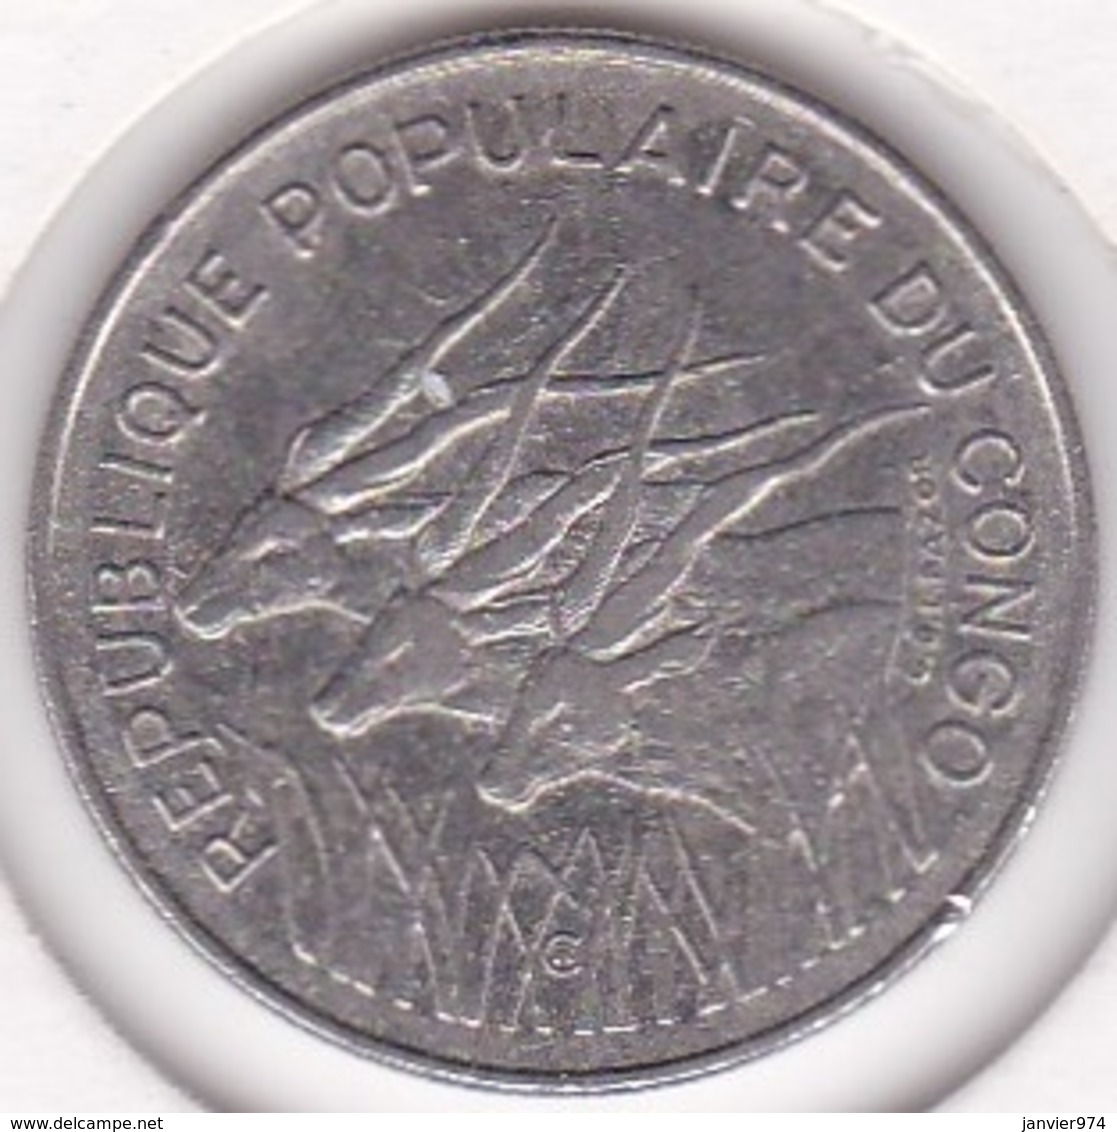 Republique Populaire Du Congo. 100 Francs 1972, En Nickel. KM# 1 - Congo (Republic 1960)